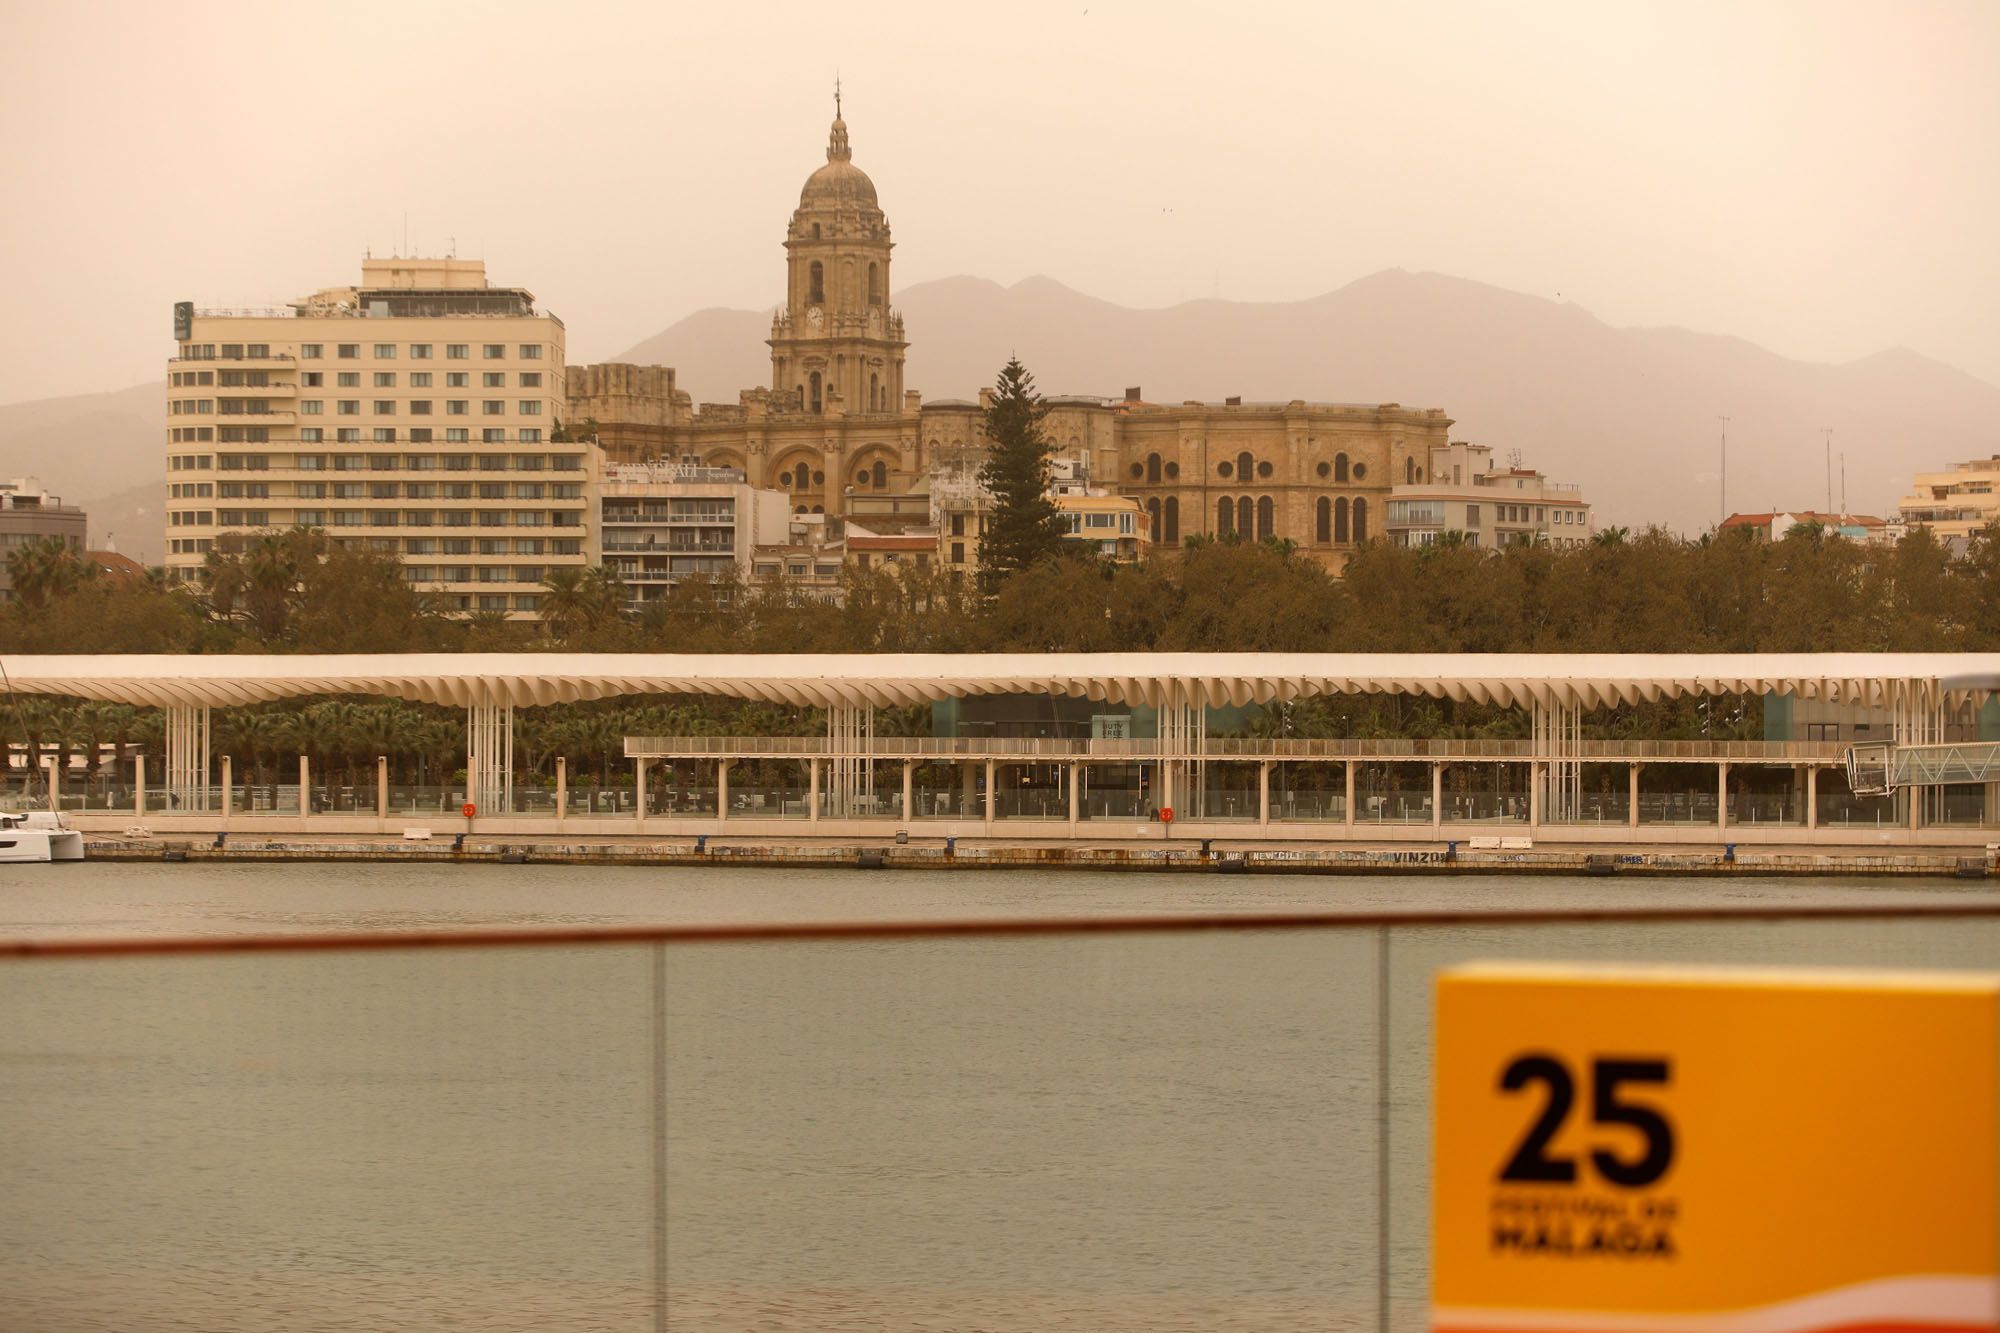 La calima vuelve a cubrir los cielos de Málaga